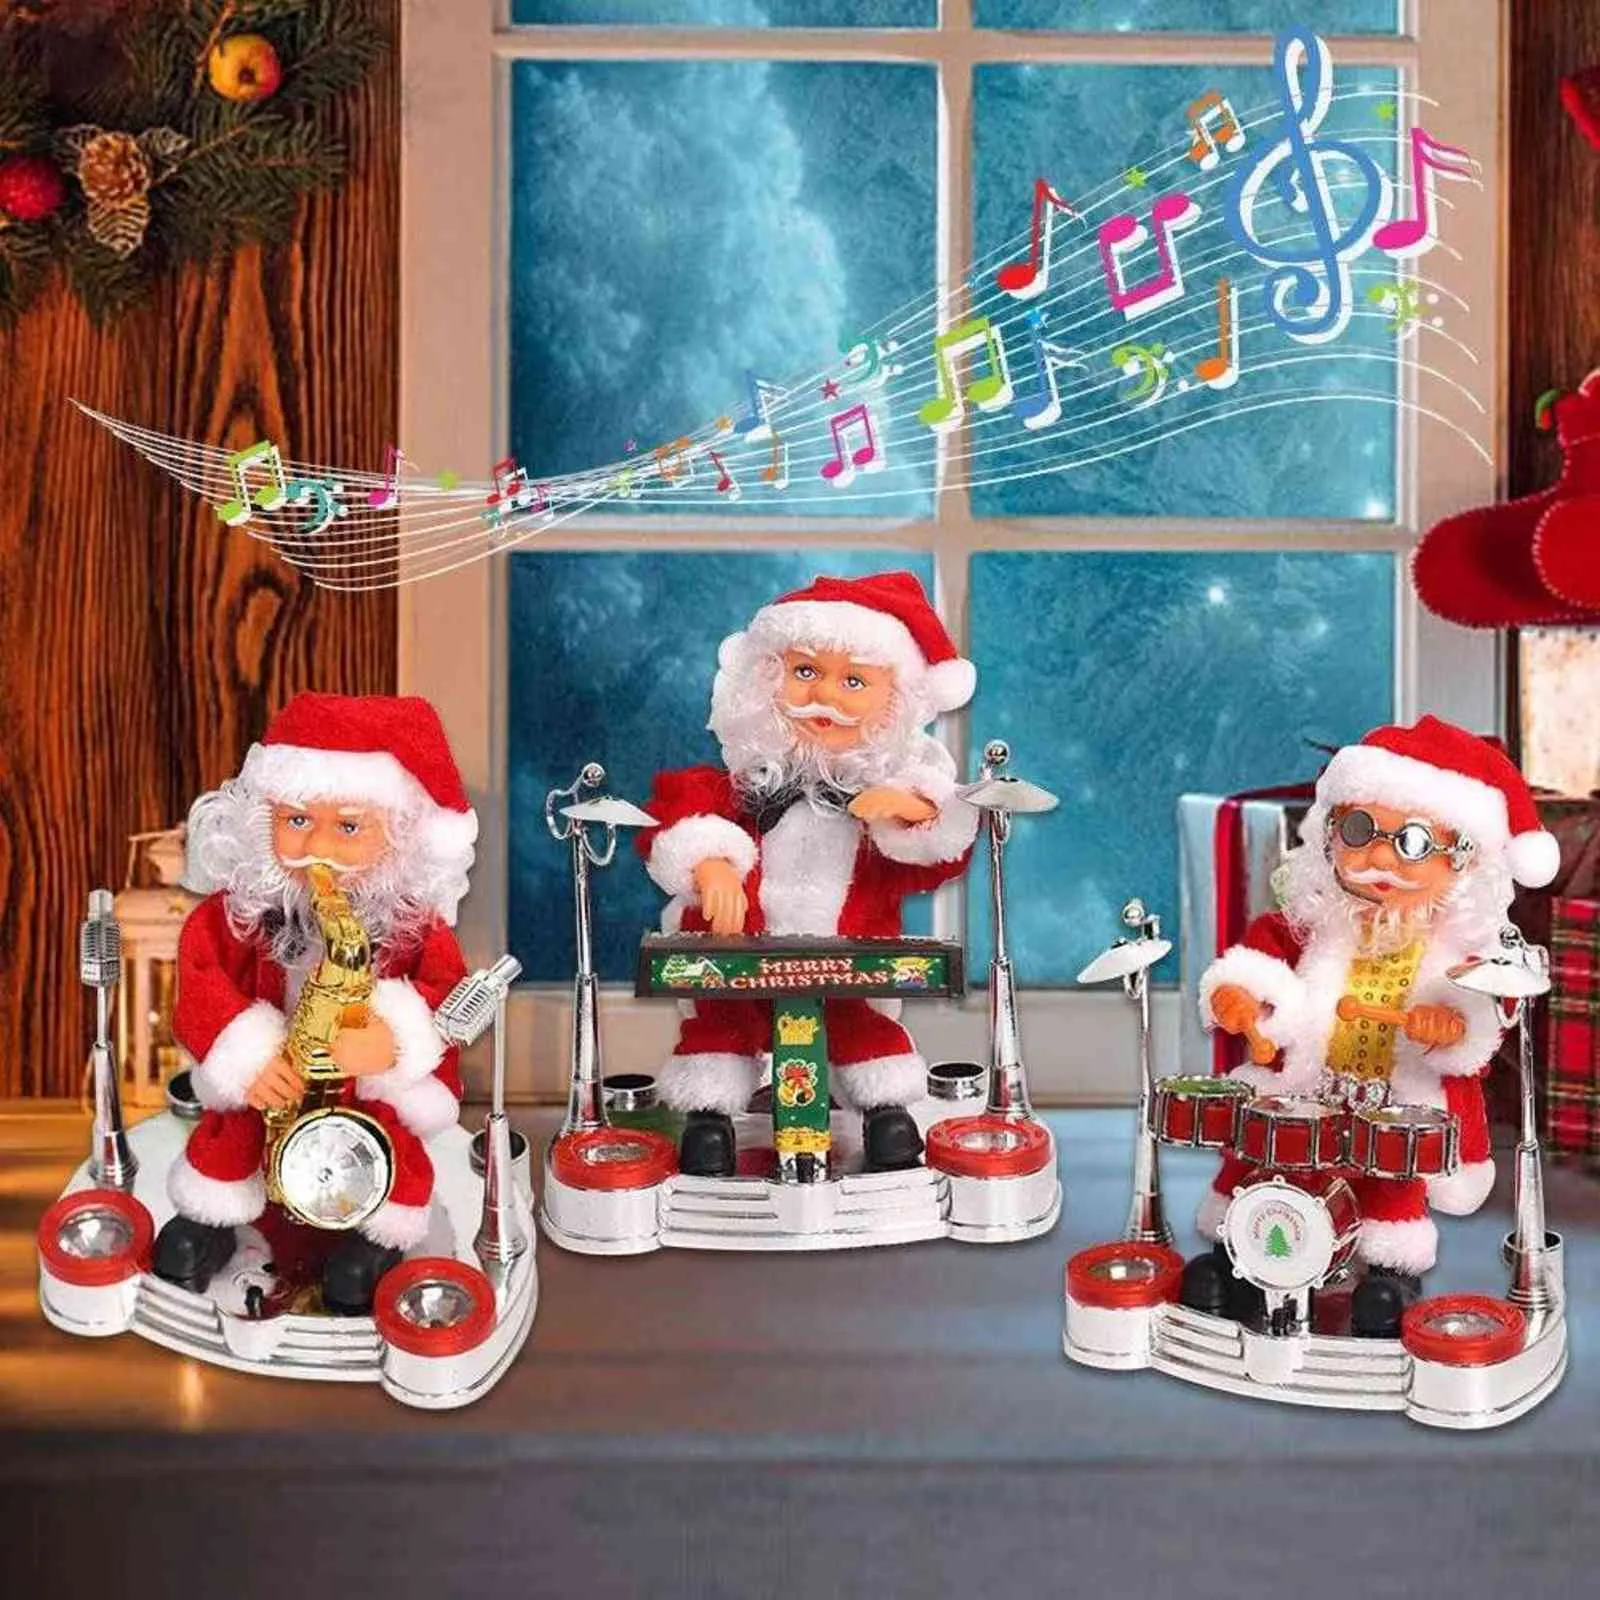 Taniec śpiewający Święty Mikołaj grający bęben świąteczny lalka muzyczna poruczna figura akumulowana dekoracja G0911286L